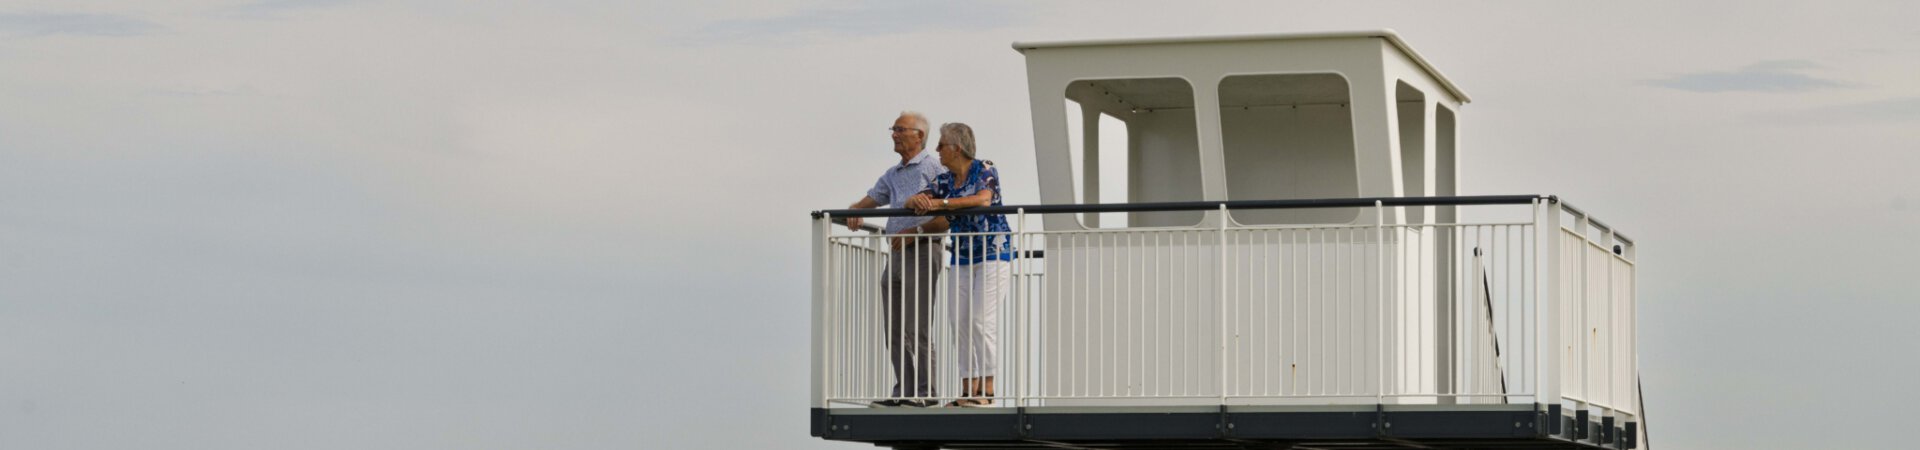 Man en vrouw kijken over de Oosterschelde vanaf het uitzichts- en informatiepunt 't Schip aan Nationaal Park Oosterschelde